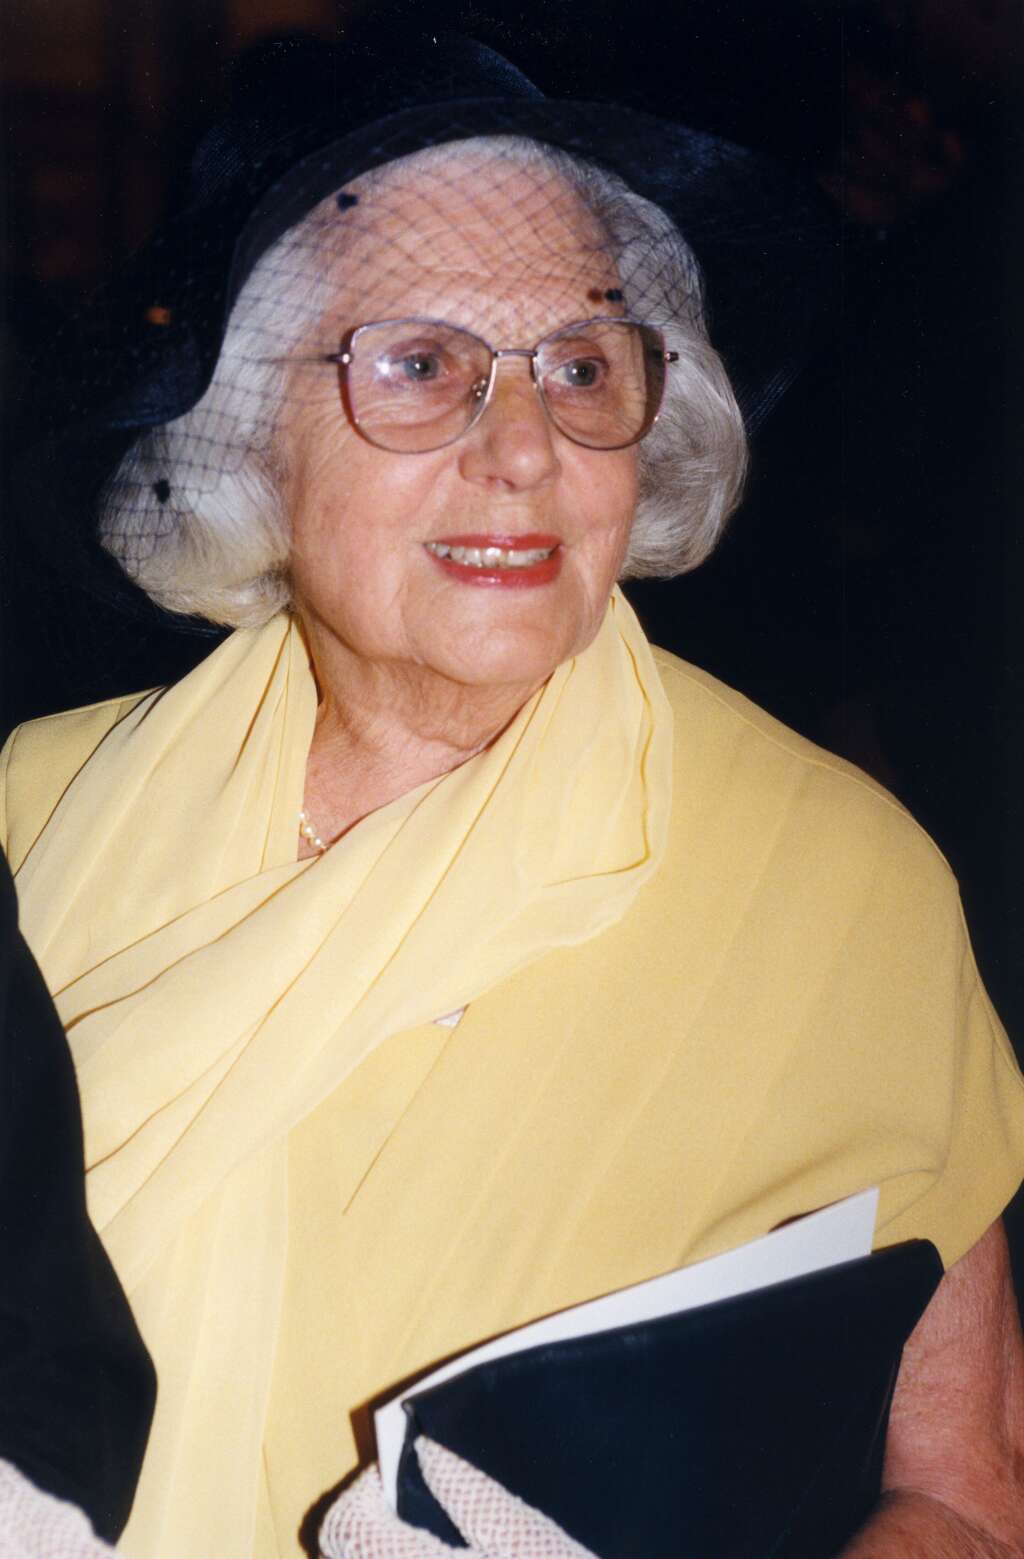 11 juillet - Renée Dorléac - La comédienne et mère de Catherine Deneuve, Renée Dorléac, de son nom de scène Renée Simonot, est morte à Paris à l’âge de 109 ans. <br /><br /><strong>>>> En savoir plus dans notre article <a href="https://www.huffingtonpost.fr/entry/renee-dorleac-est-morte-lactrice-et-mere-de-catherine-deneuve-avait-109-ans_fr_60eff5d6e4b0b2a04a20b5d4?bpl" target="_blank" rel="noopener noreferrer">par ici</a></strong>